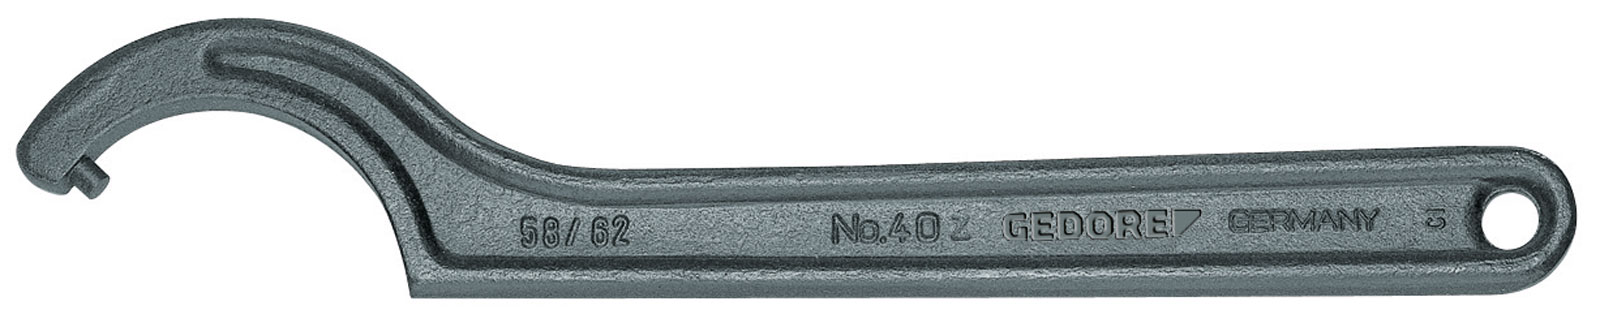 Bild von 40 Z 180-195 Hakenschlüssel, DIN 1810 Form B, 180-195 mm